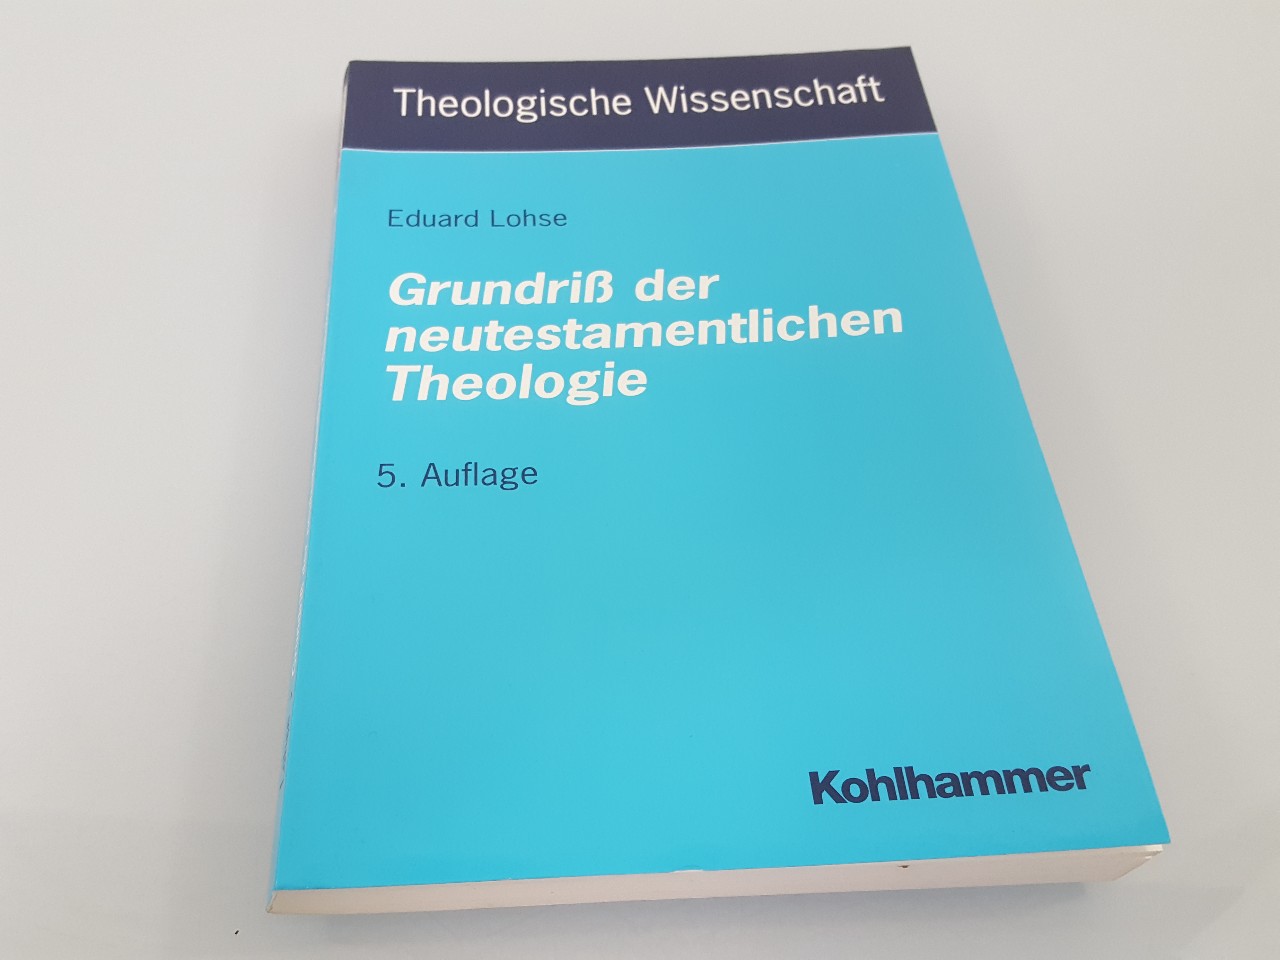 Grundriss der neutestamentlichen Theologie - Lohse, Eduard, Otto Kaiser und Eduard Lohse